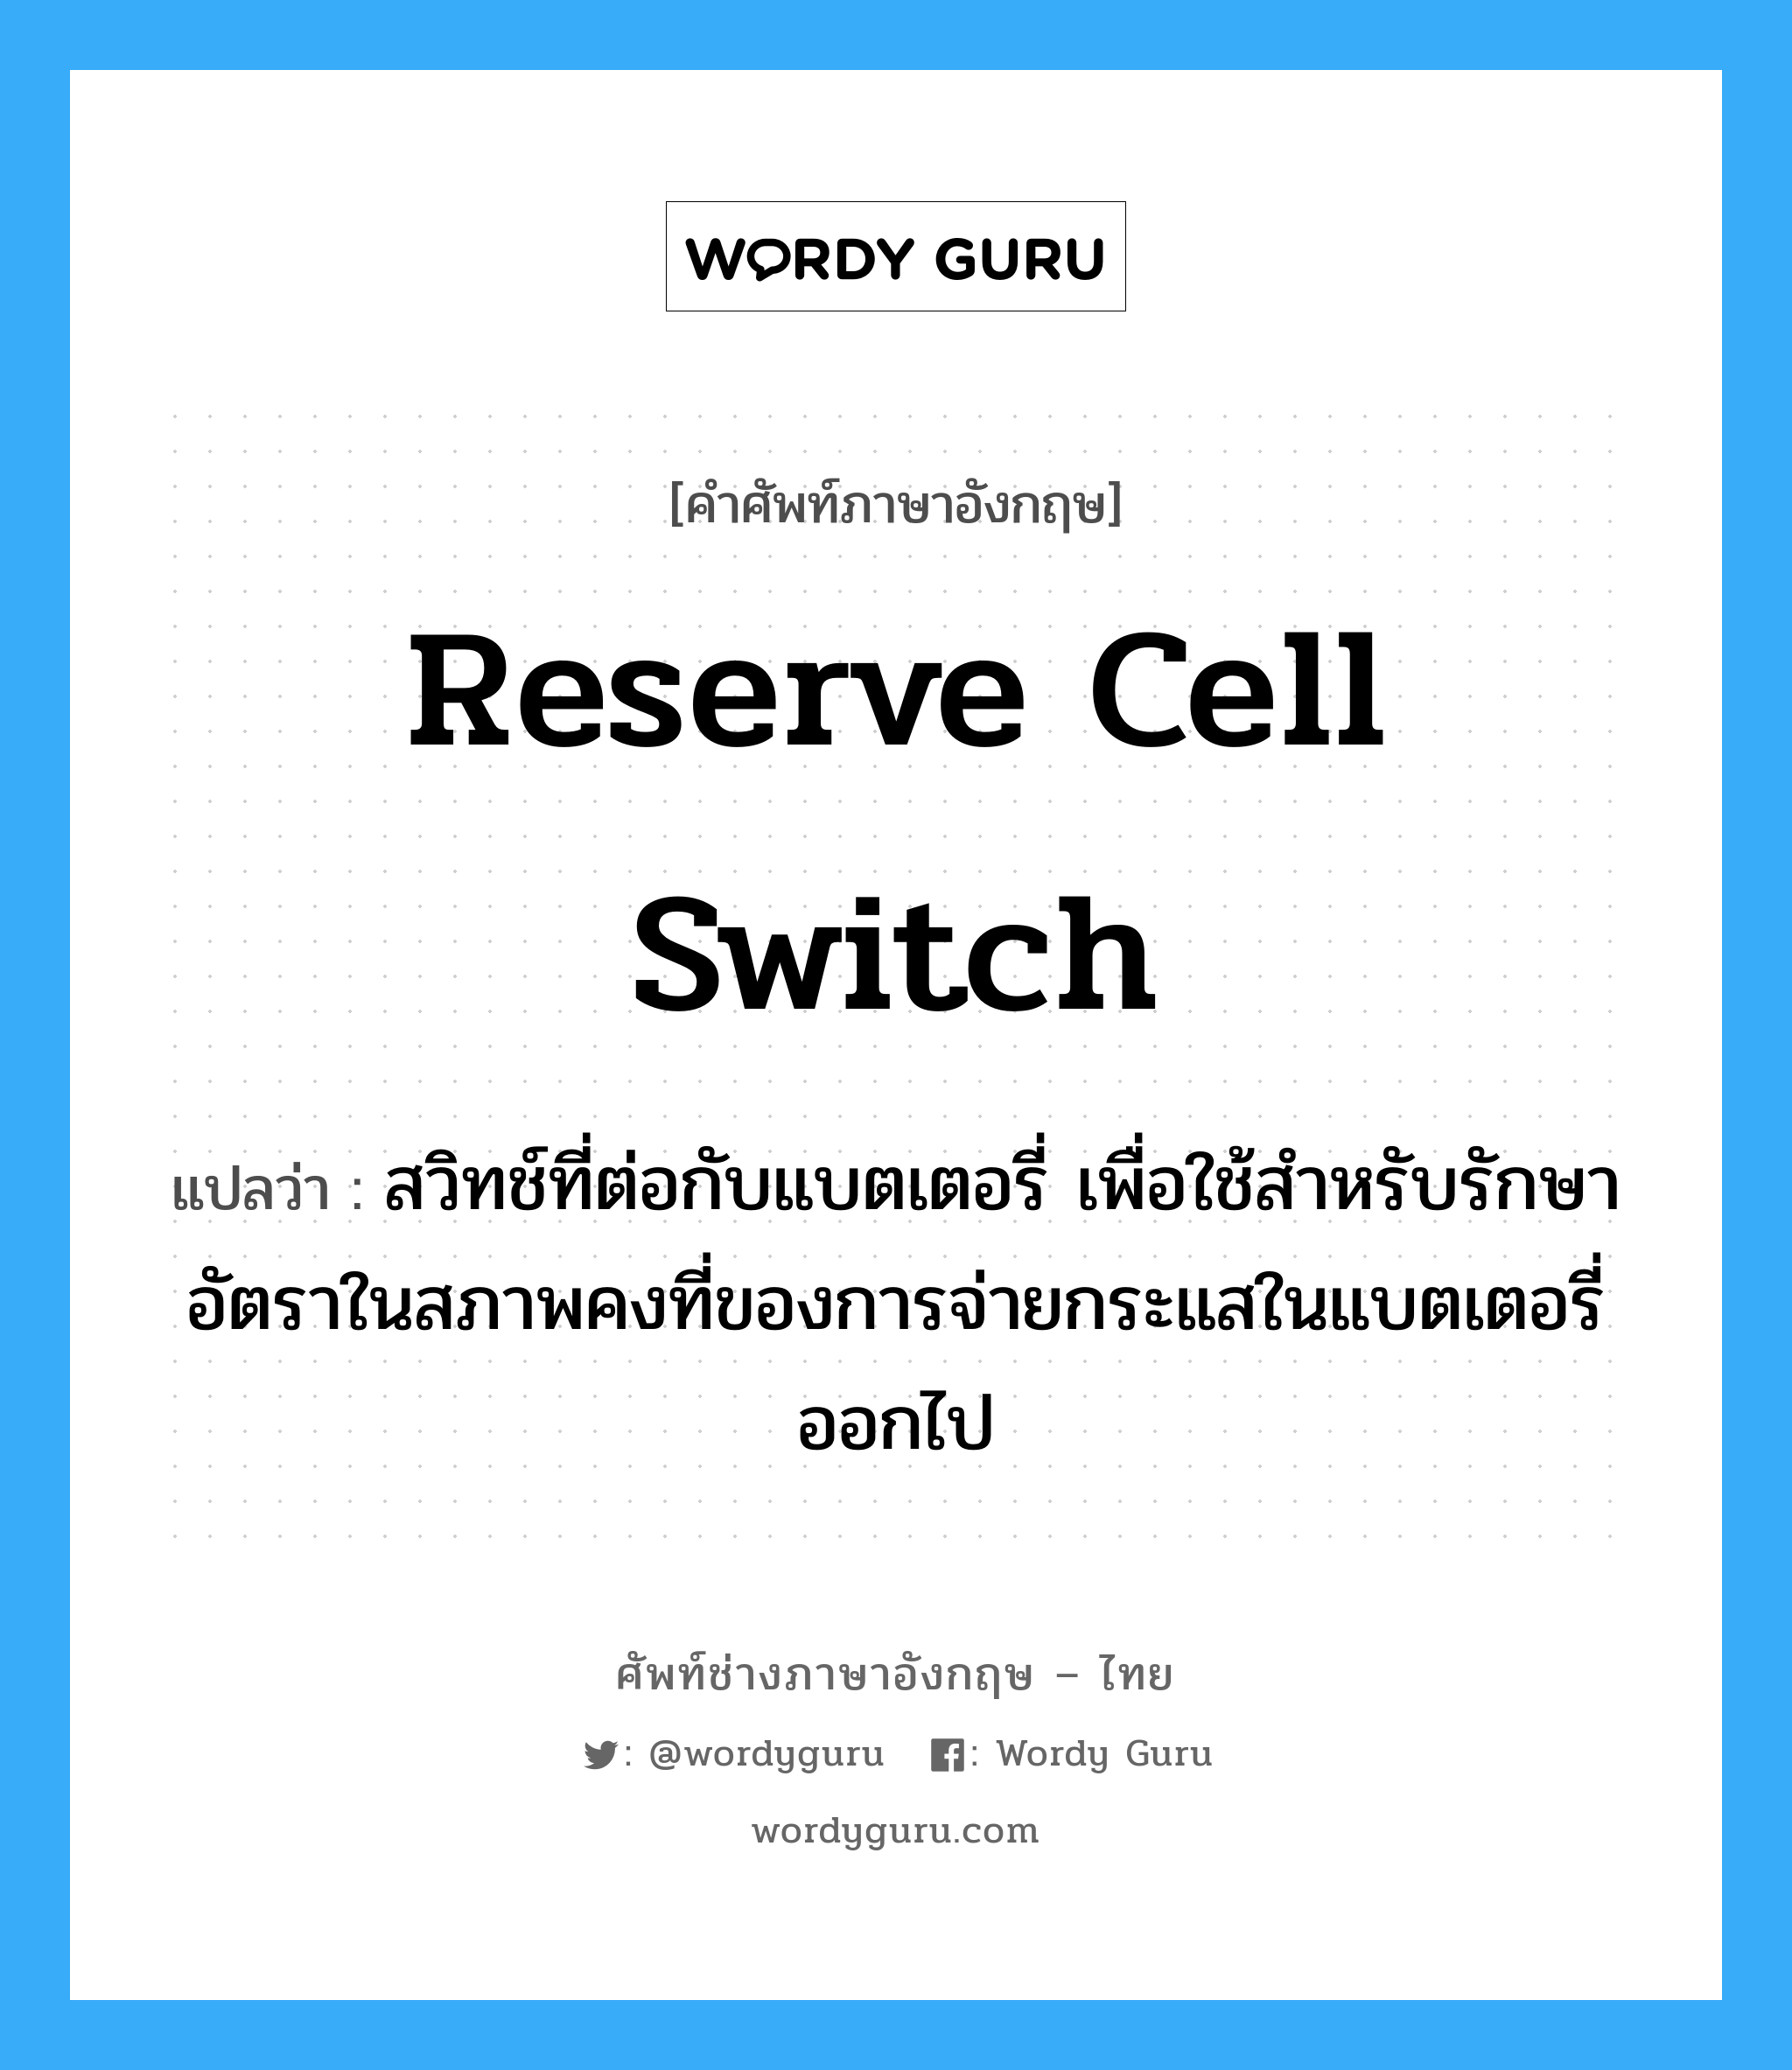 reserve cell switch แปลว่า?, คำศัพท์ช่างภาษาอังกฤษ - ไทย reserve cell switch คำศัพท์ภาษาอังกฤษ reserve cell switch แปลว่า สวิทช์ที่ต่อกับแบตเตอรี่ เพื่อใช้สำหรับรักษาอัตราในสภาพคงที่ของการจ่ายกระแสในแบตเตอรี่ออกไป